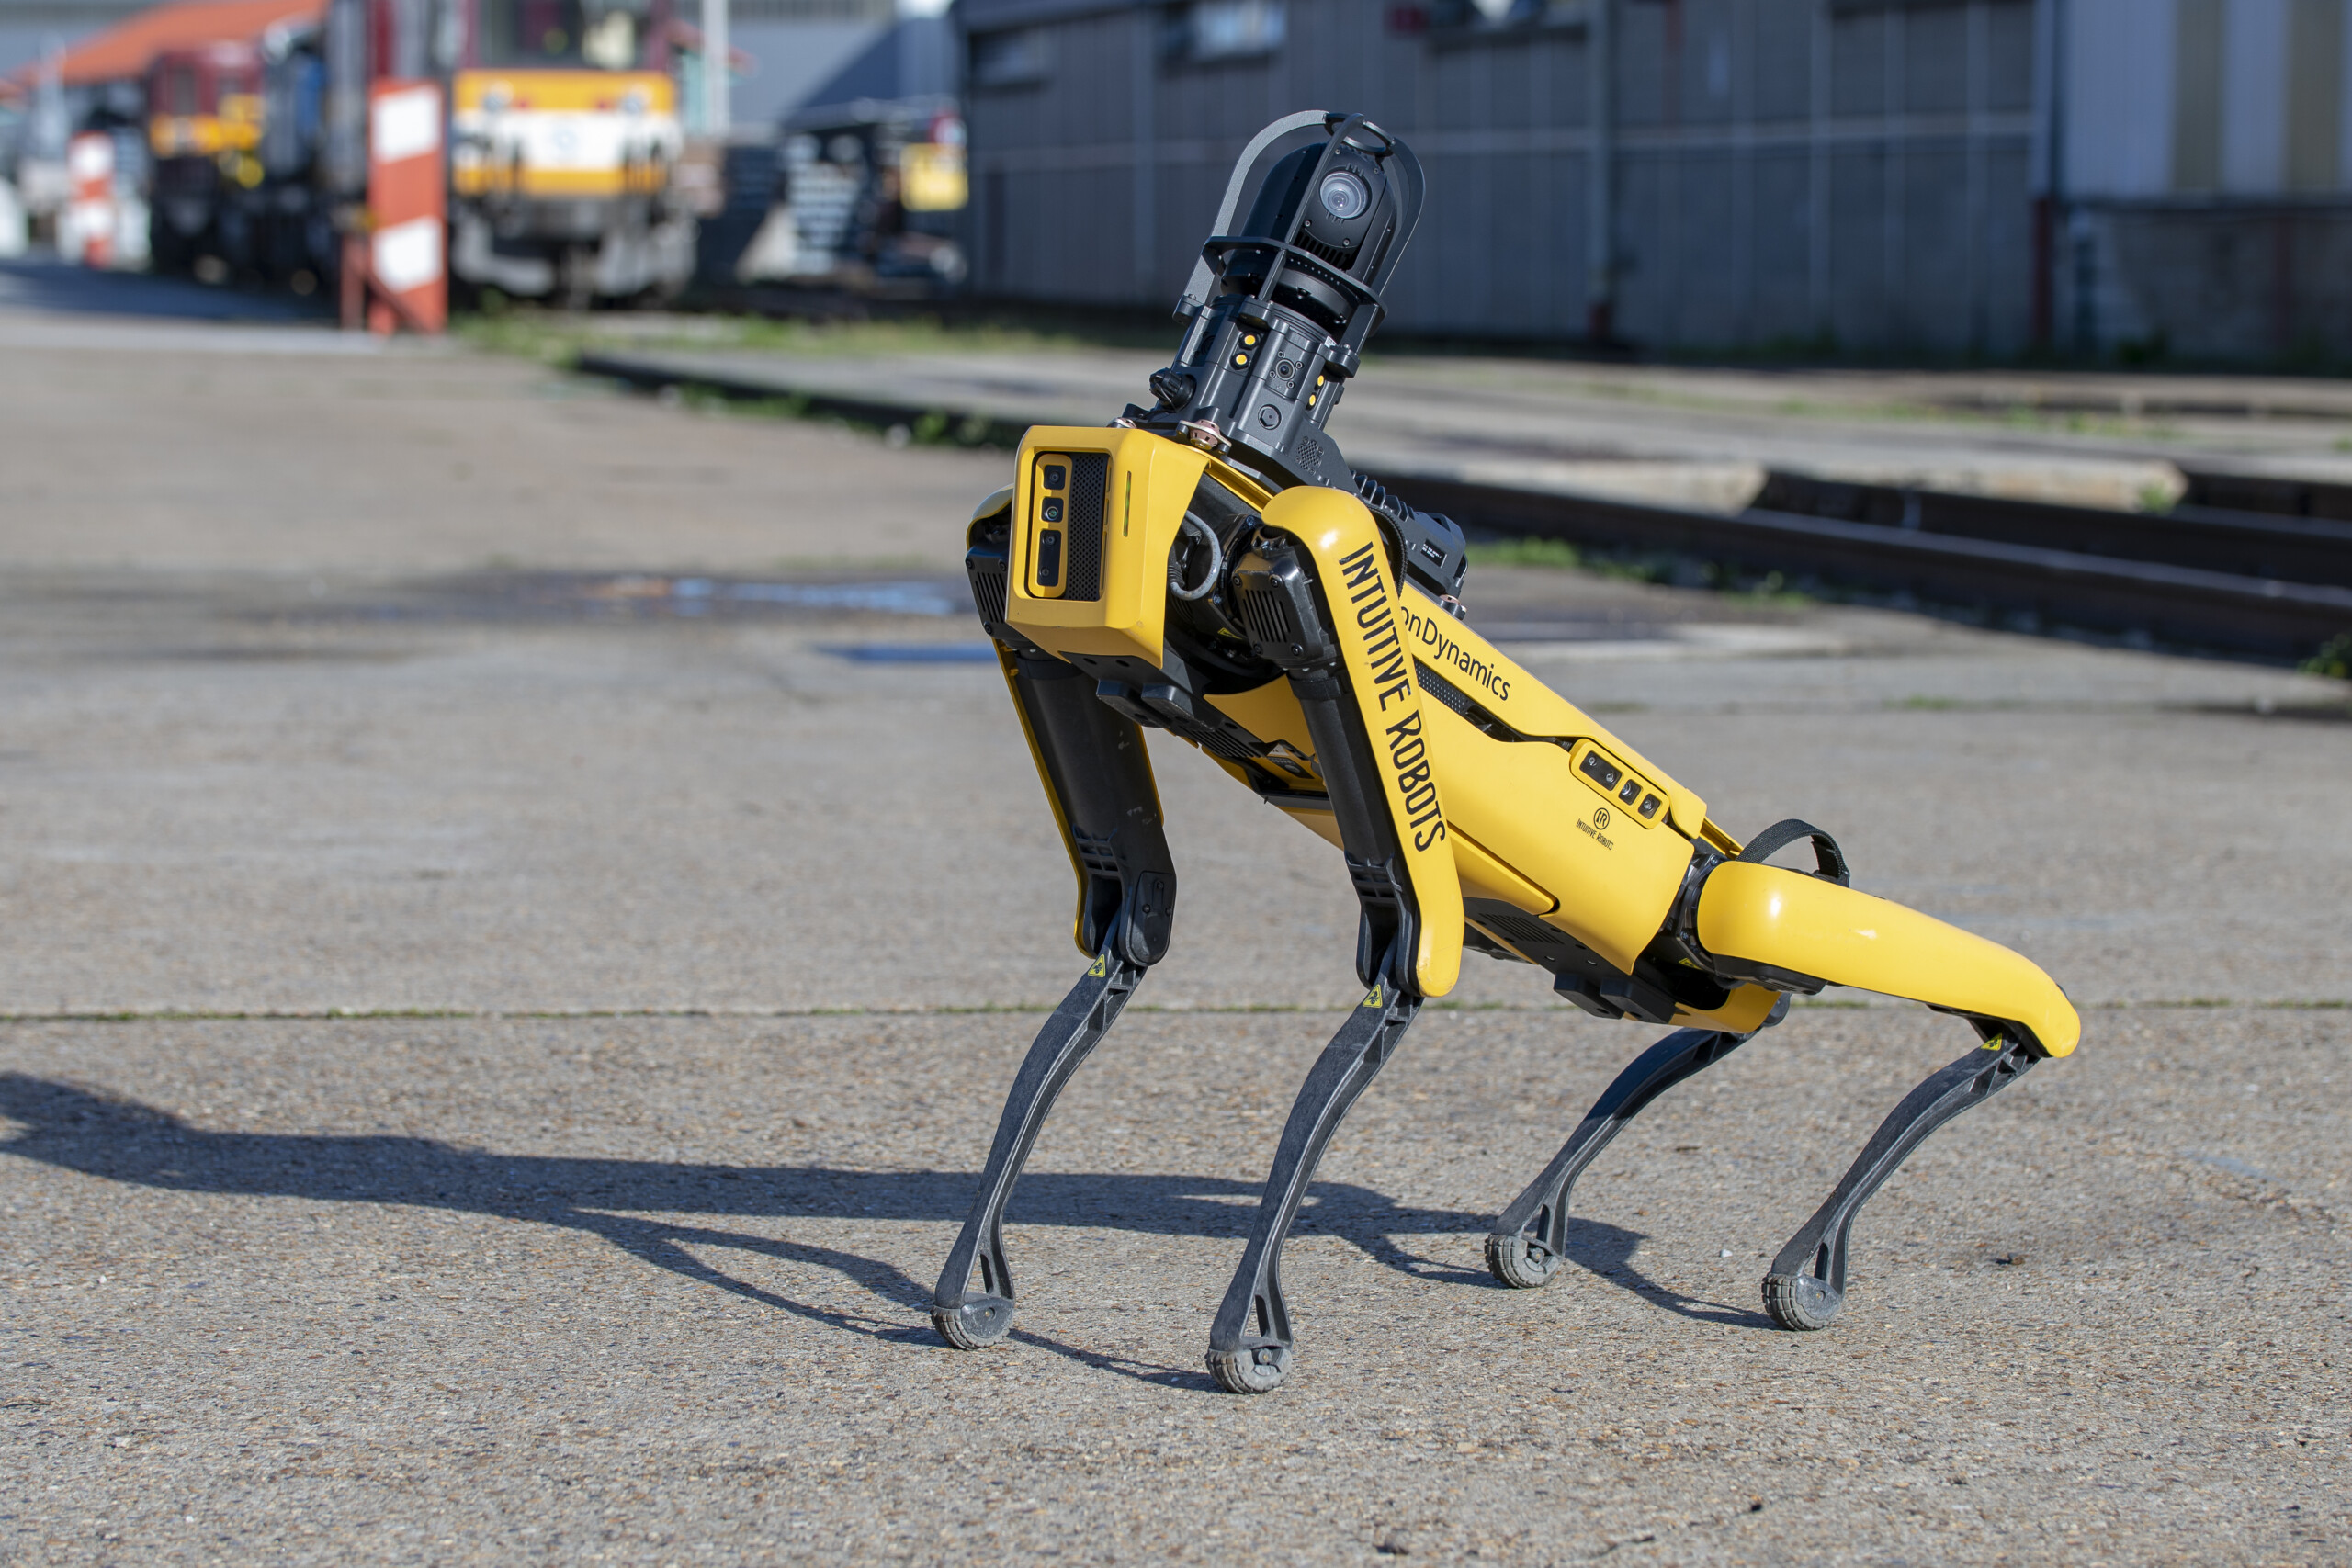 Visuel J’ai entendu parler d’un chien-robot à la RATP. À quoi sert-il ?